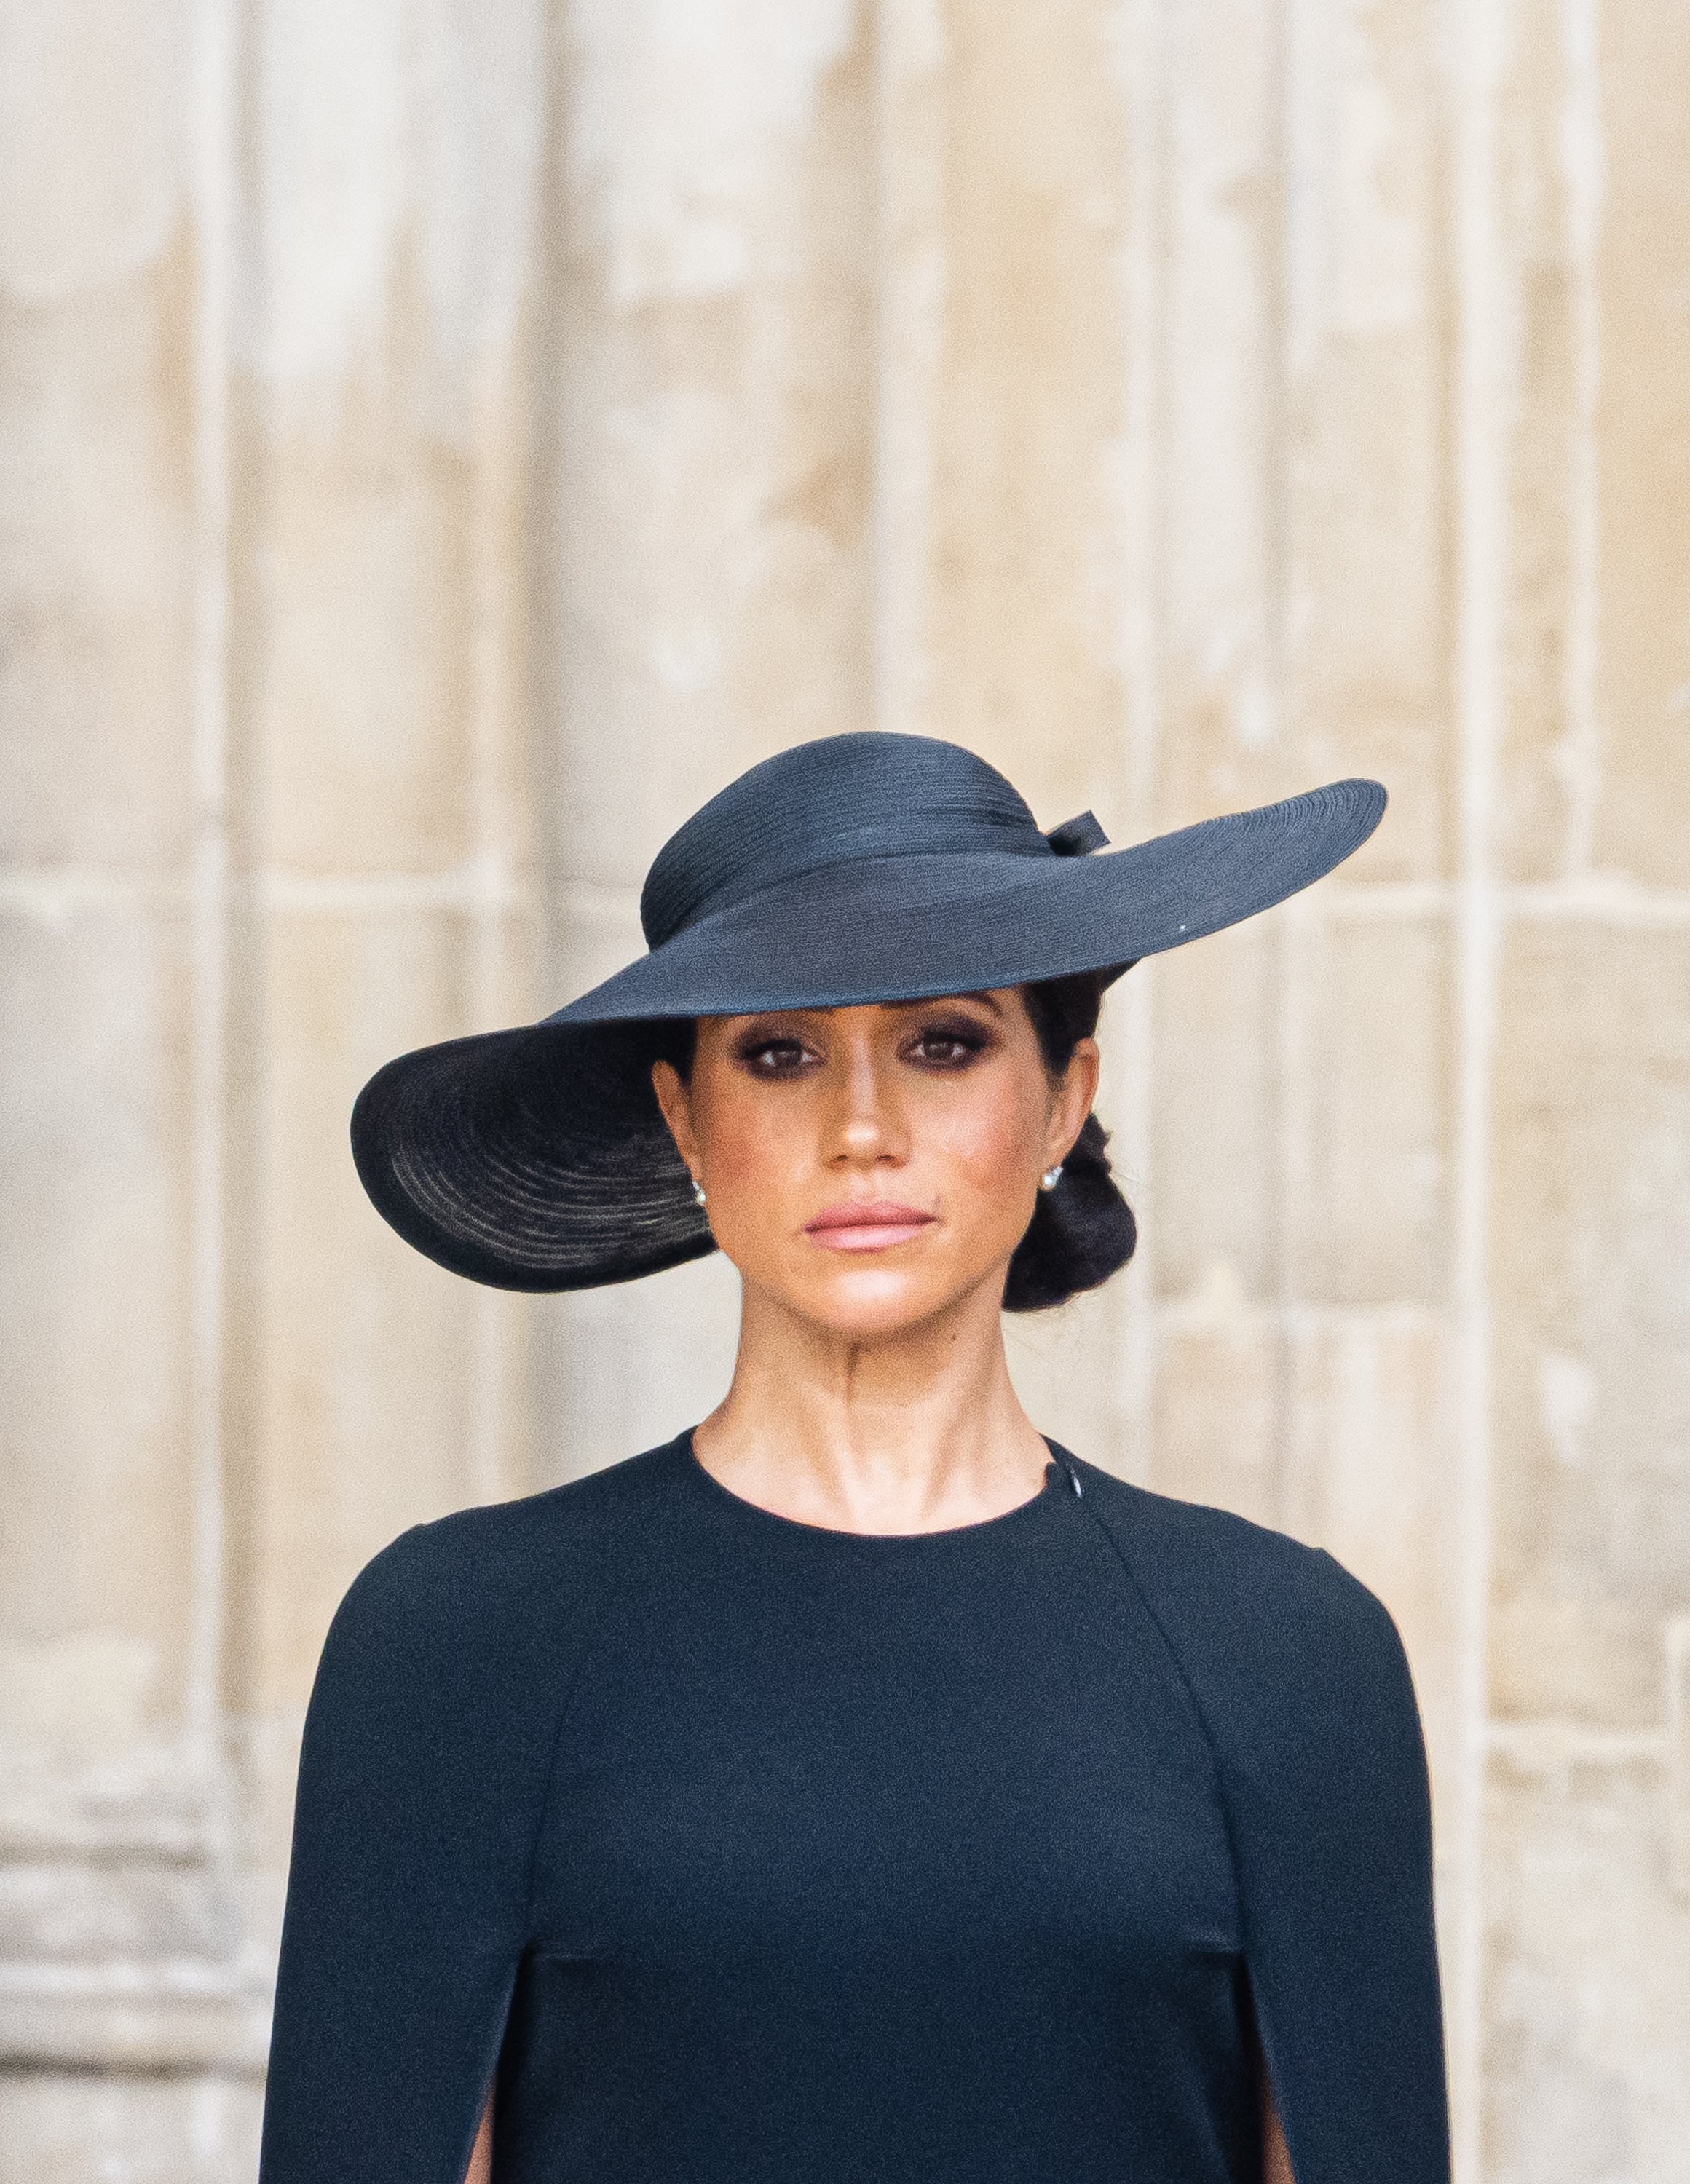 Meghan, duquesa de Sussex, durante el funeral de estado de la reina Elizabeth II en la Abadía de Westminster, el 19 de septiembre de 2022 en Londres, Inglaterra. | Foto: Getty Images